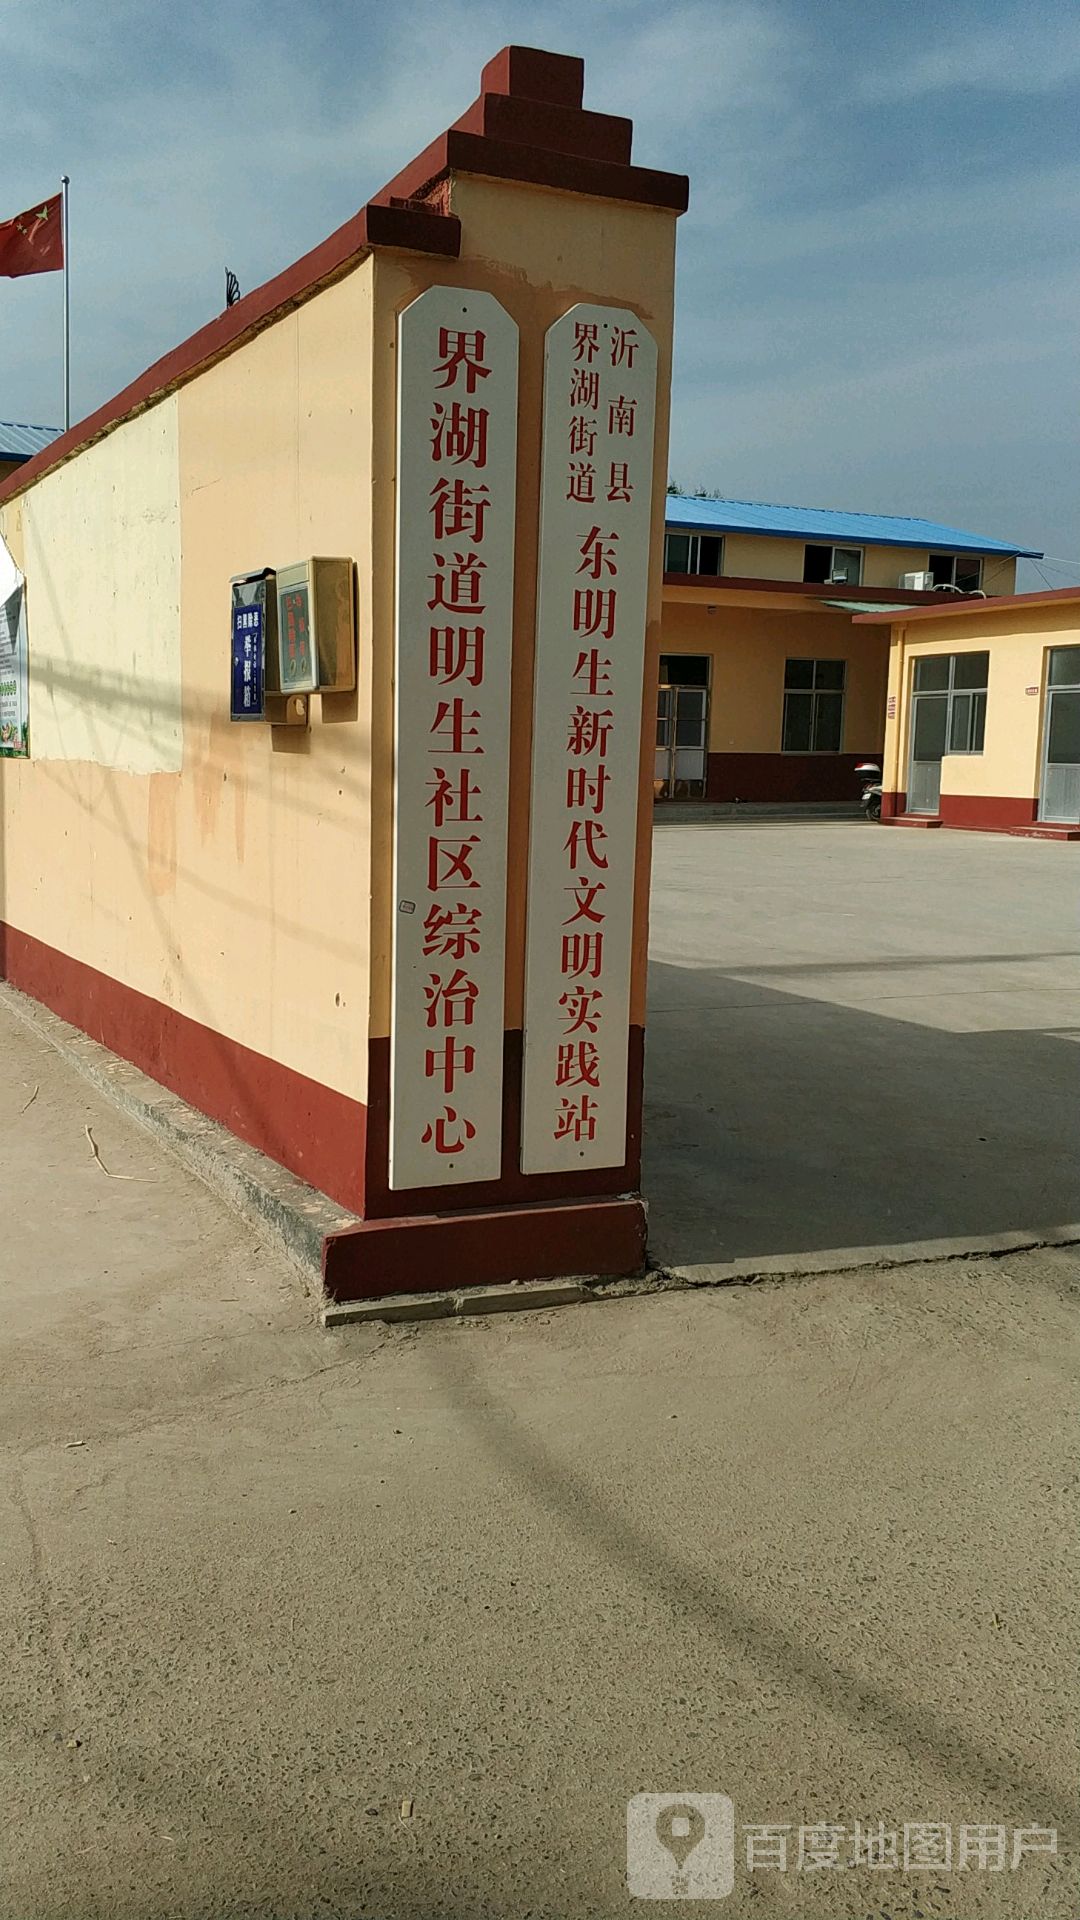 临沂市沂南县明德幼儿园北侧约230米